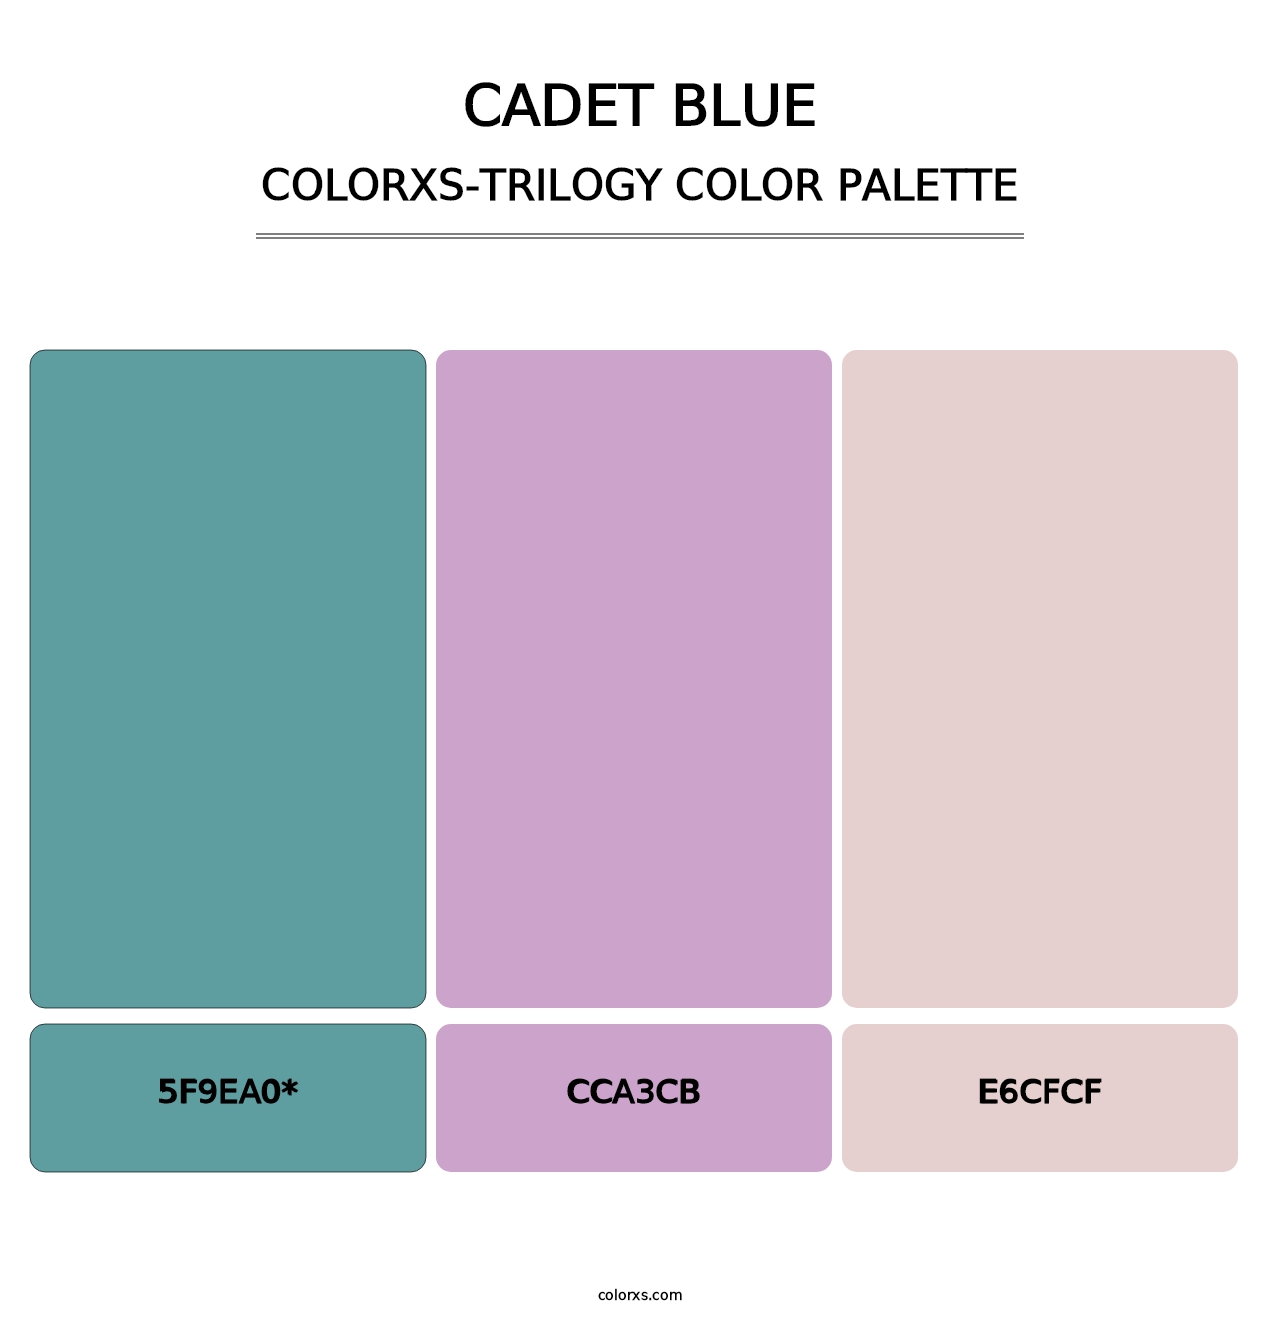 Cadet Blue - Colorxs Trilogy Palette